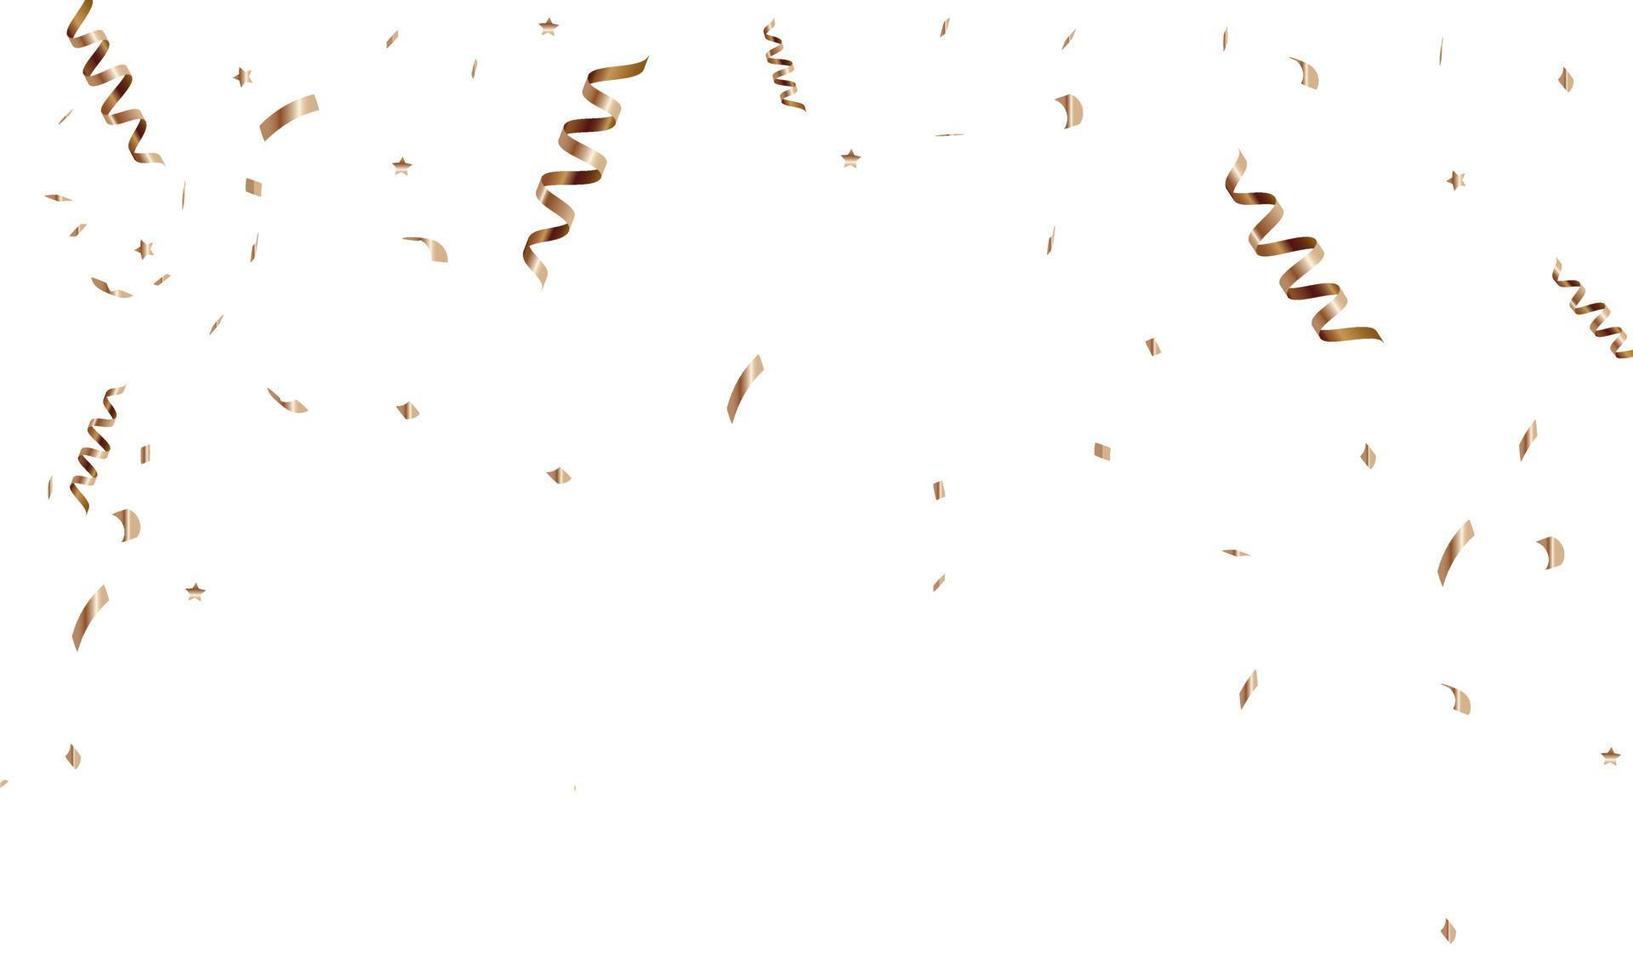 felicitatie- achtergrond met goud confetti en serpentijn. vector illustratie